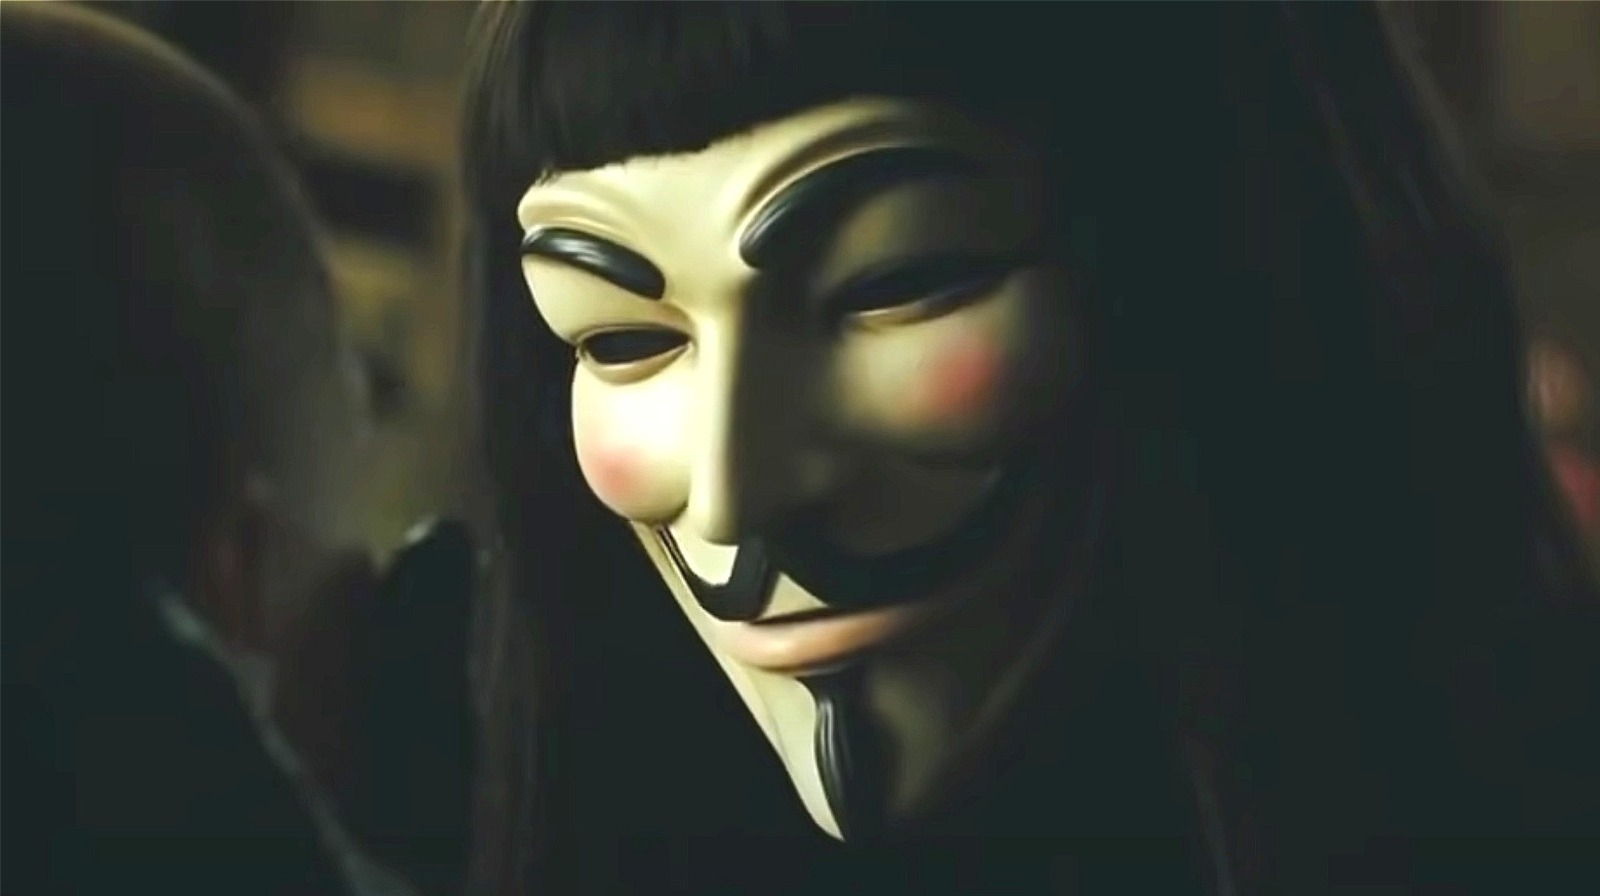 v for vendetta behind the mask